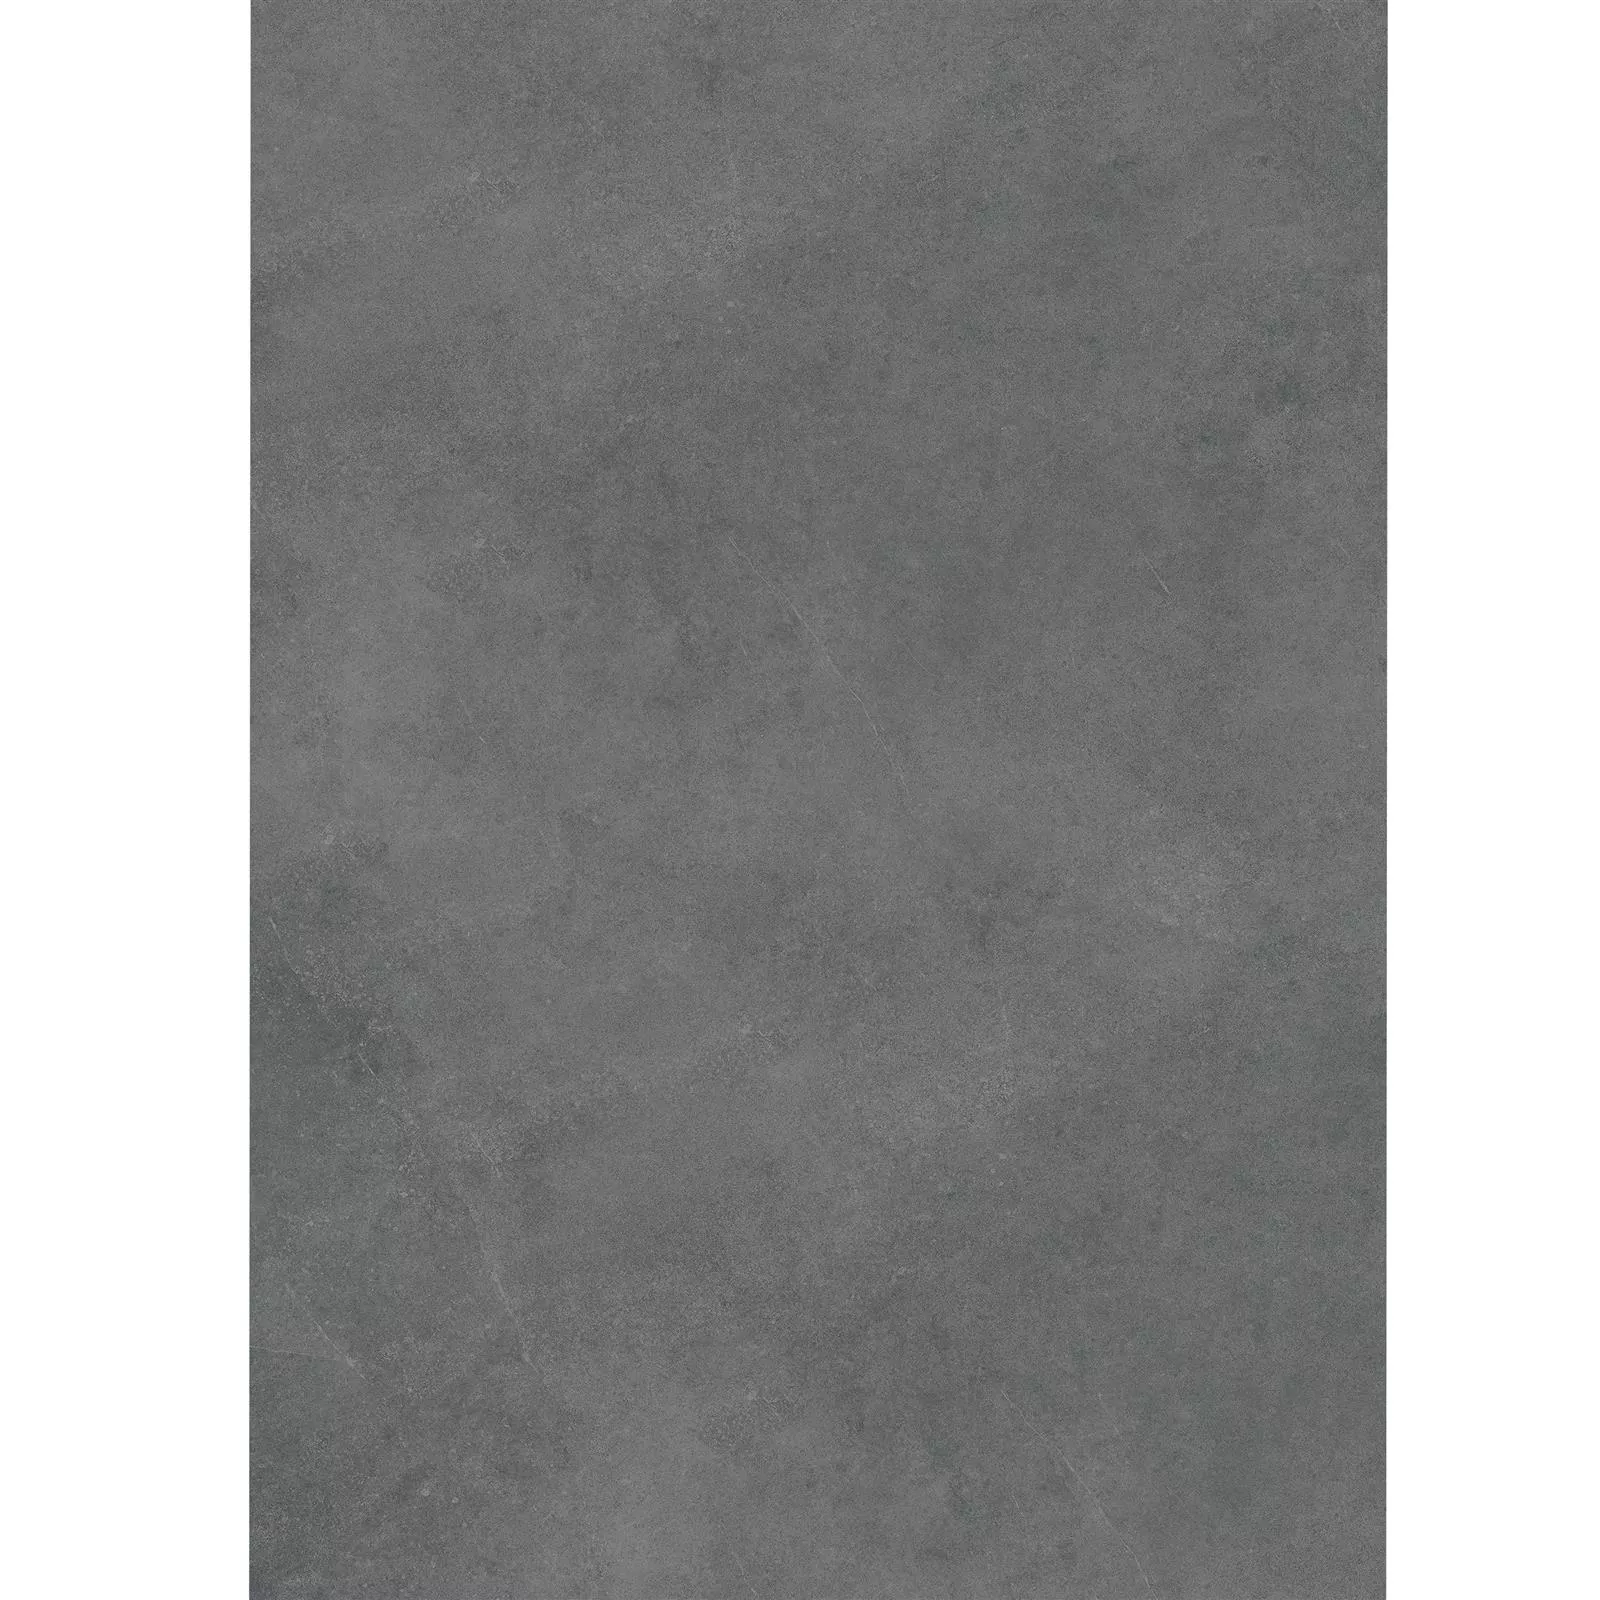 Terasové Desky Cementový Vzhled Glinde Antracitová 60x120cm